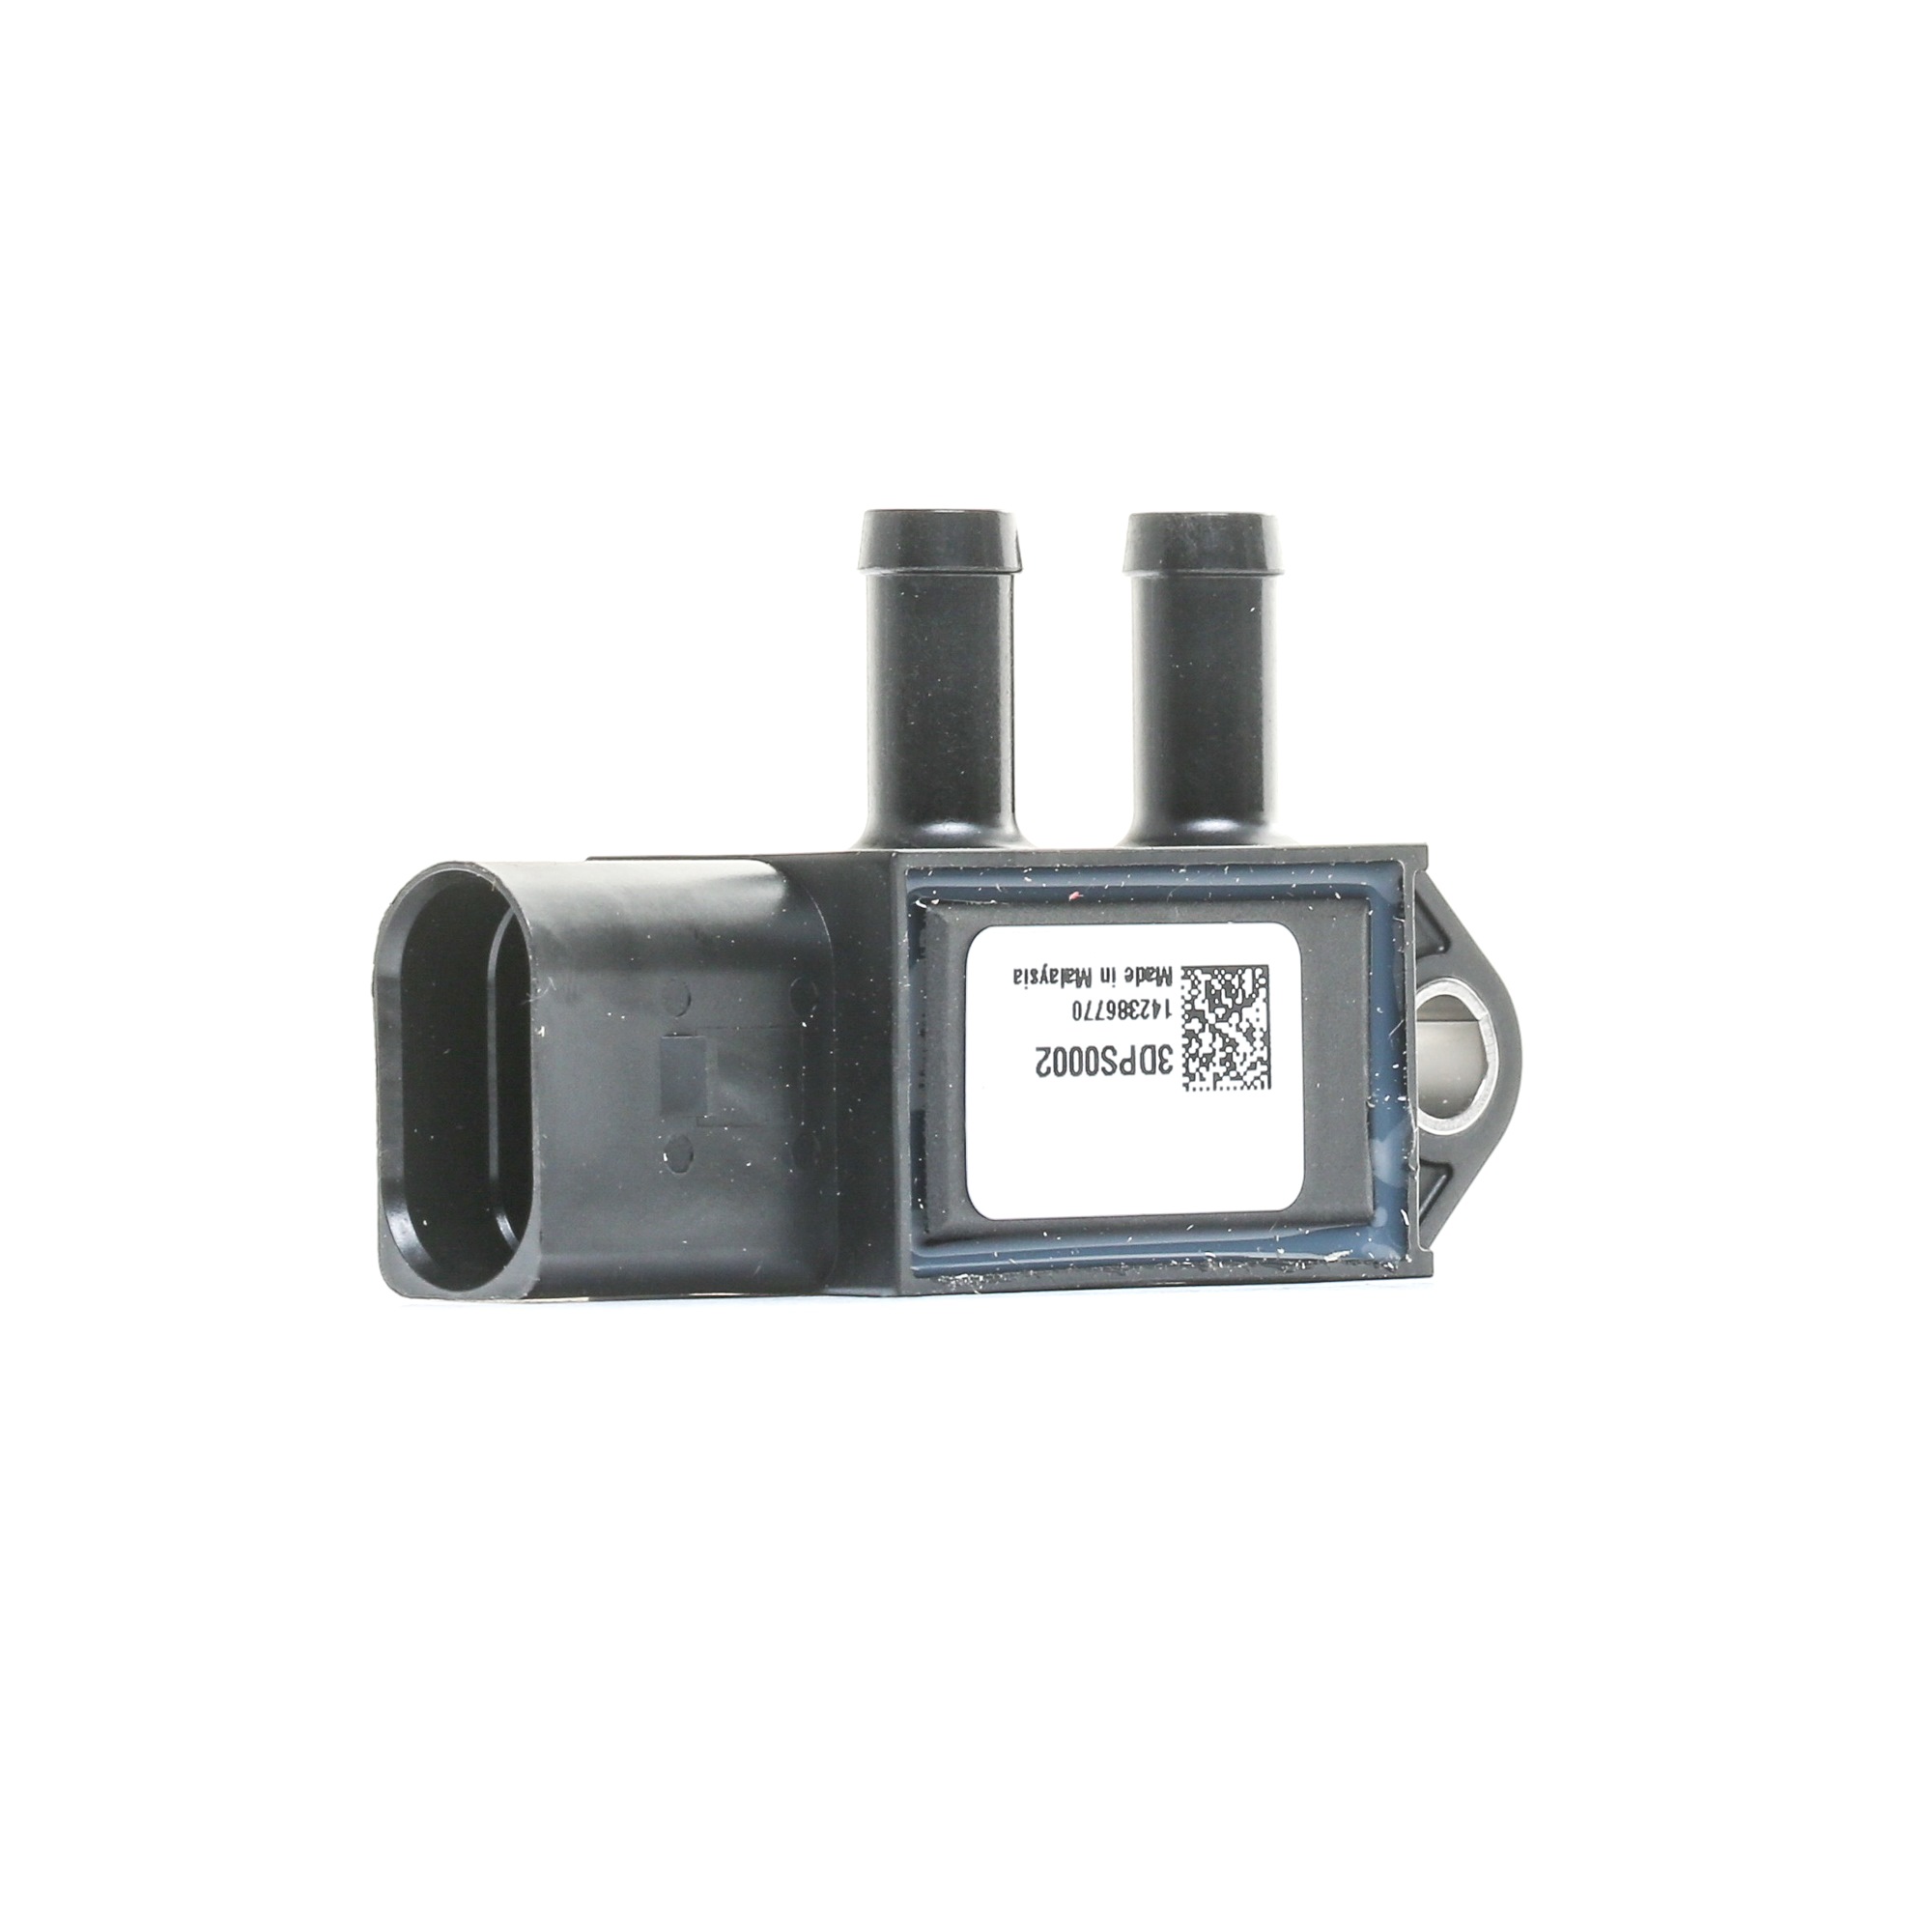 FEBI BILSTEIN Sensor, exhaust pressure 100853 Volkswagen GOLF 1998